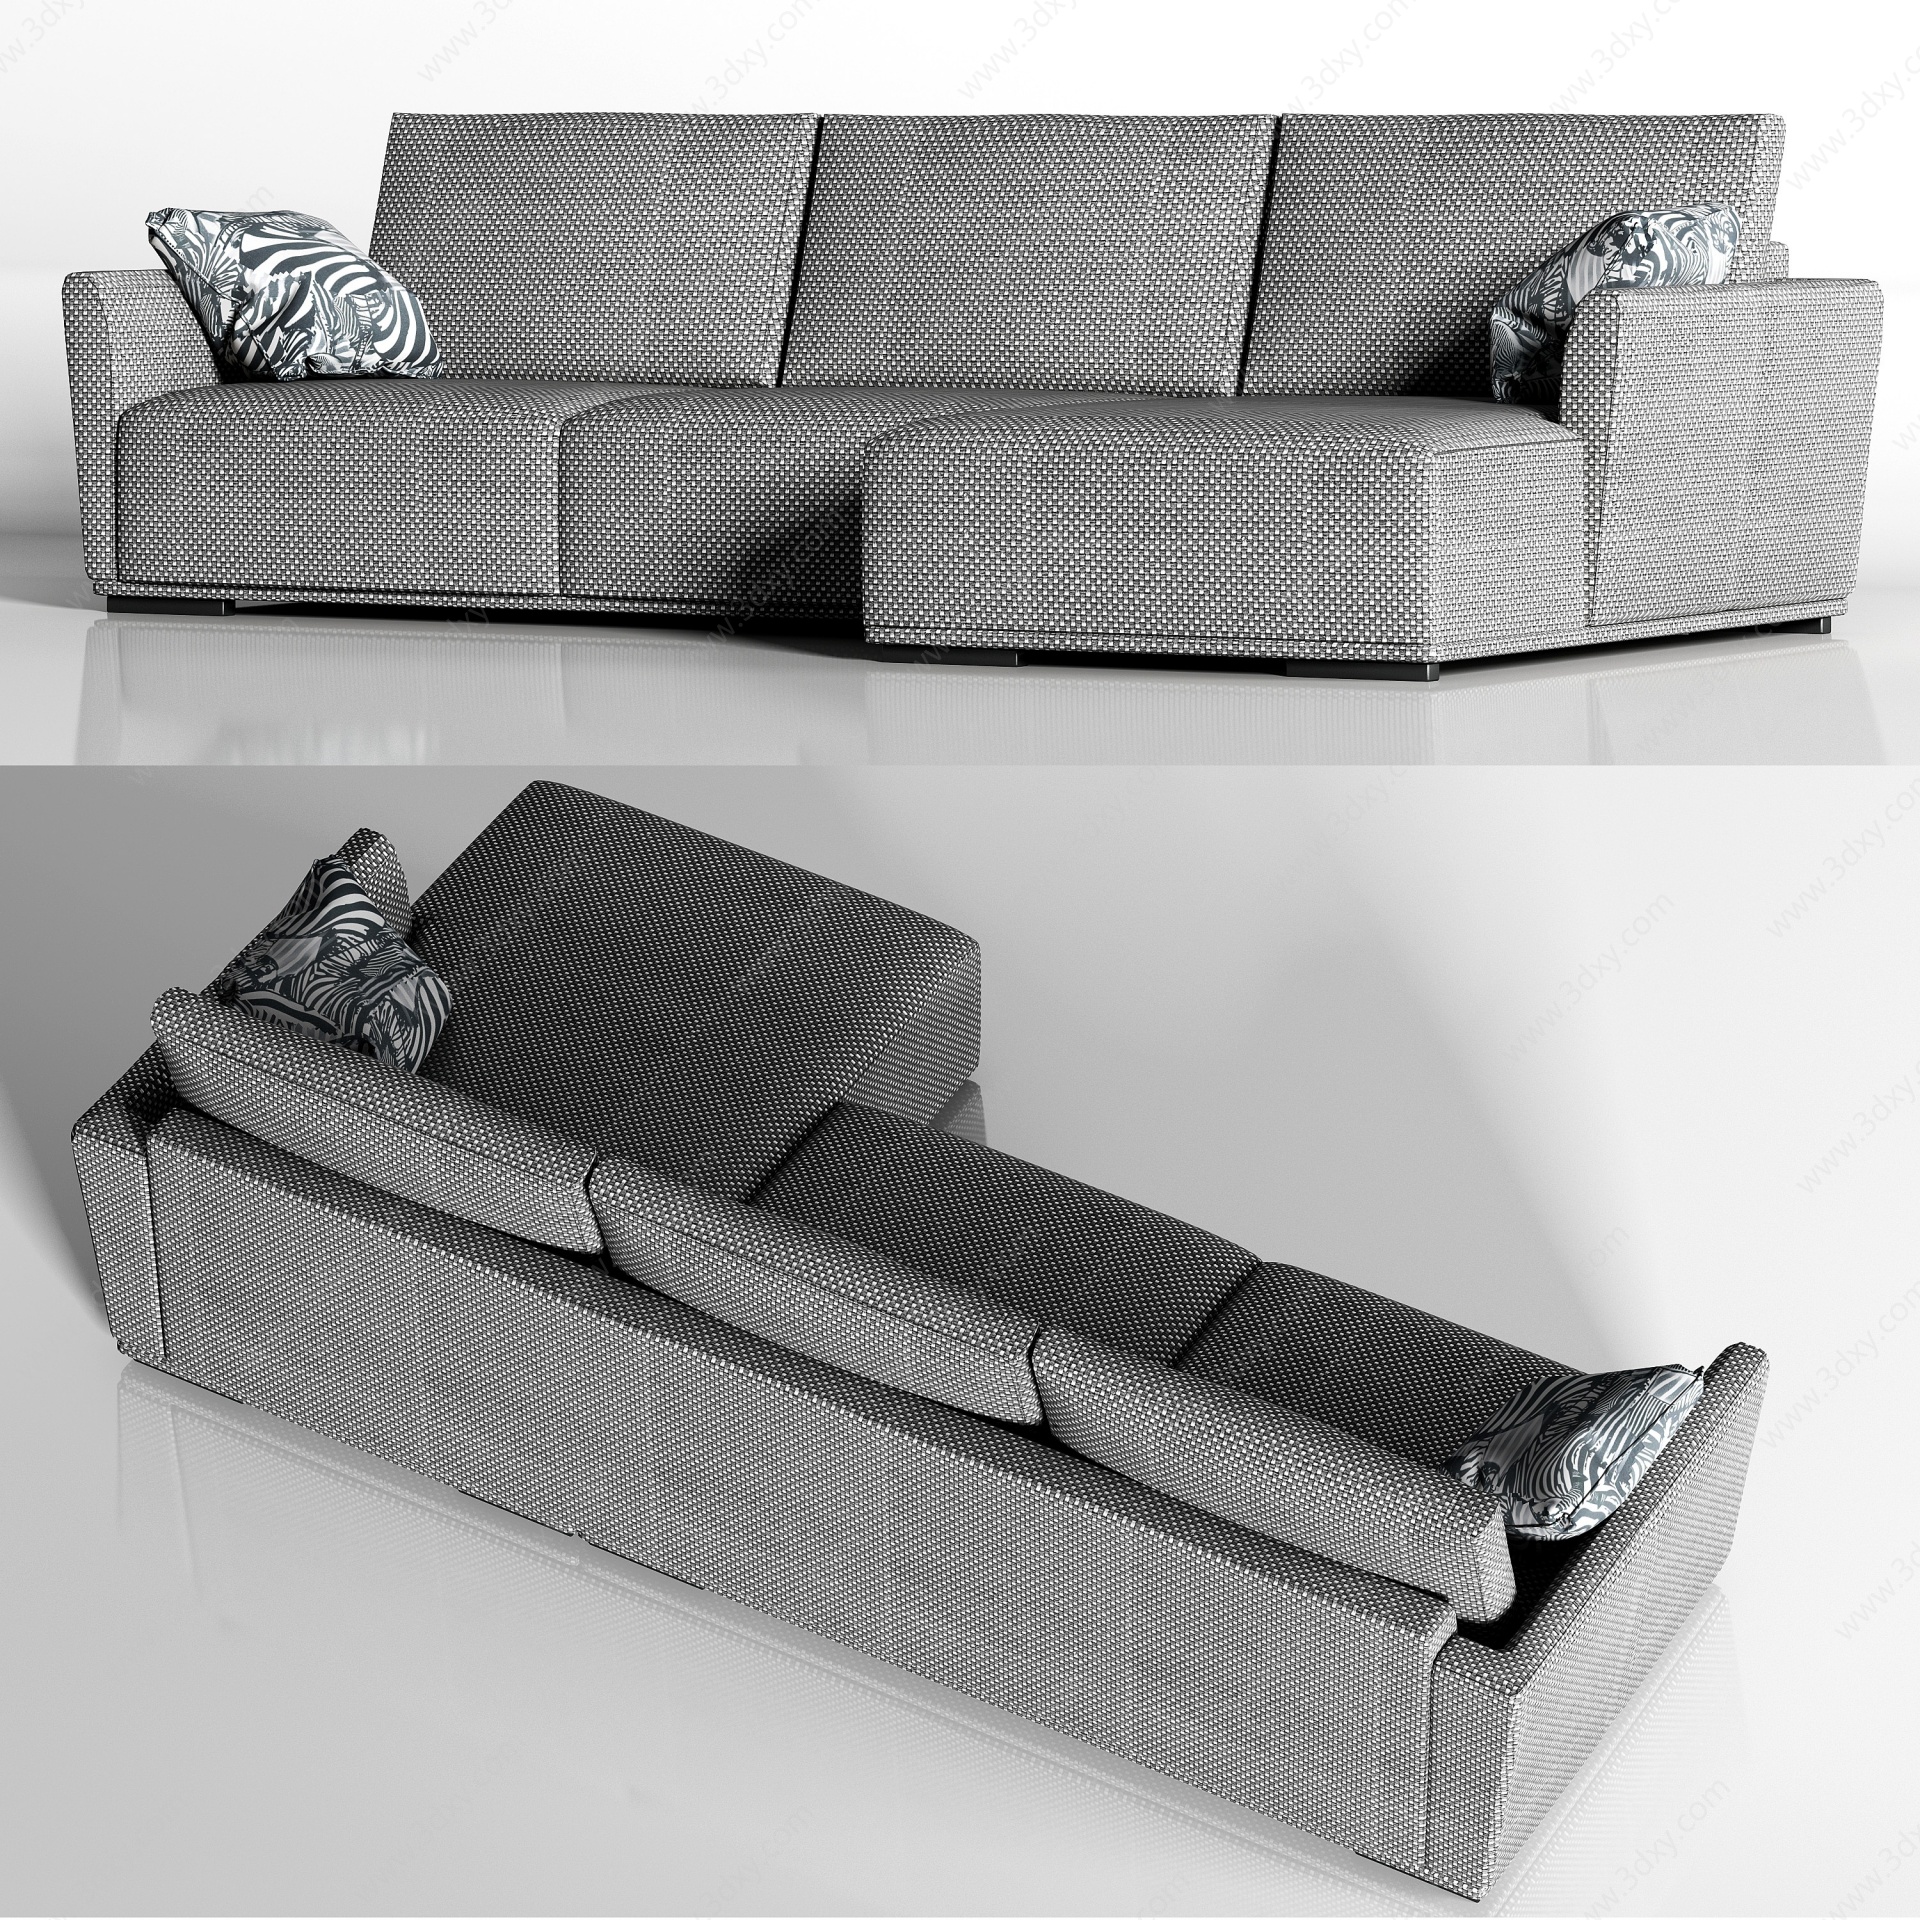 布艺转角多人沙发枕头组合3D模型